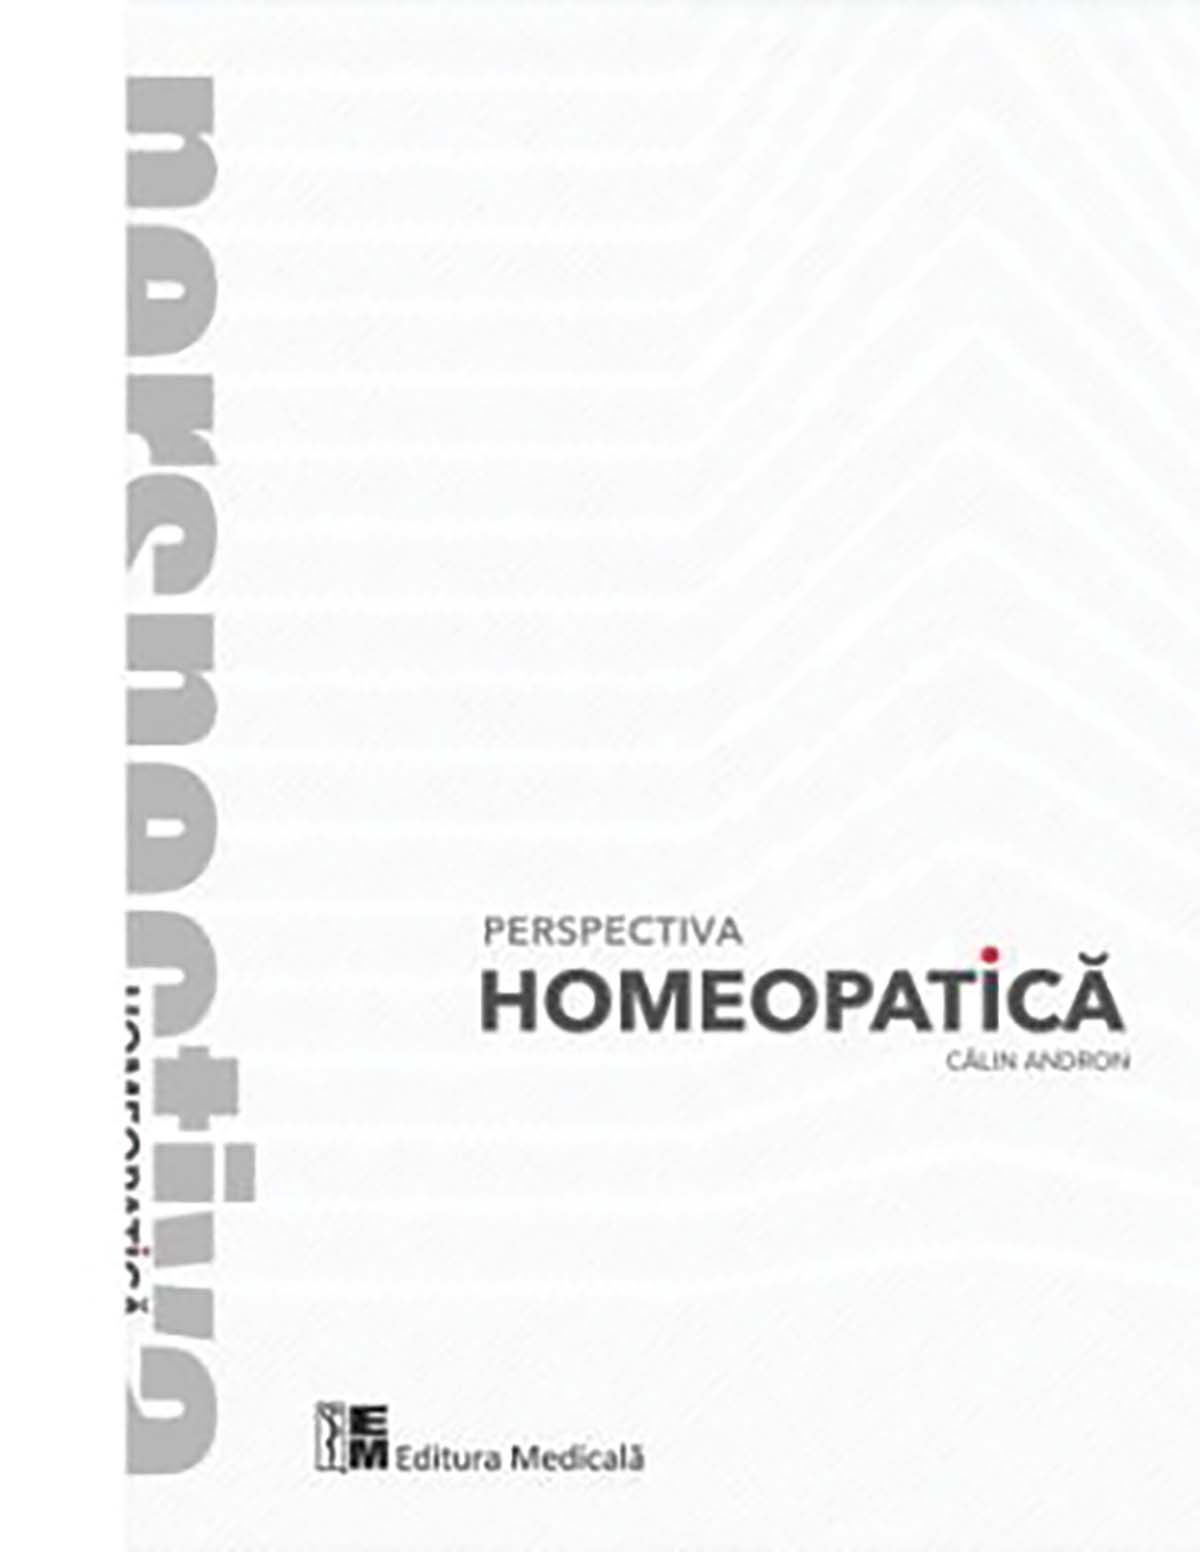 Homeopatia, în abordare exhaustivă